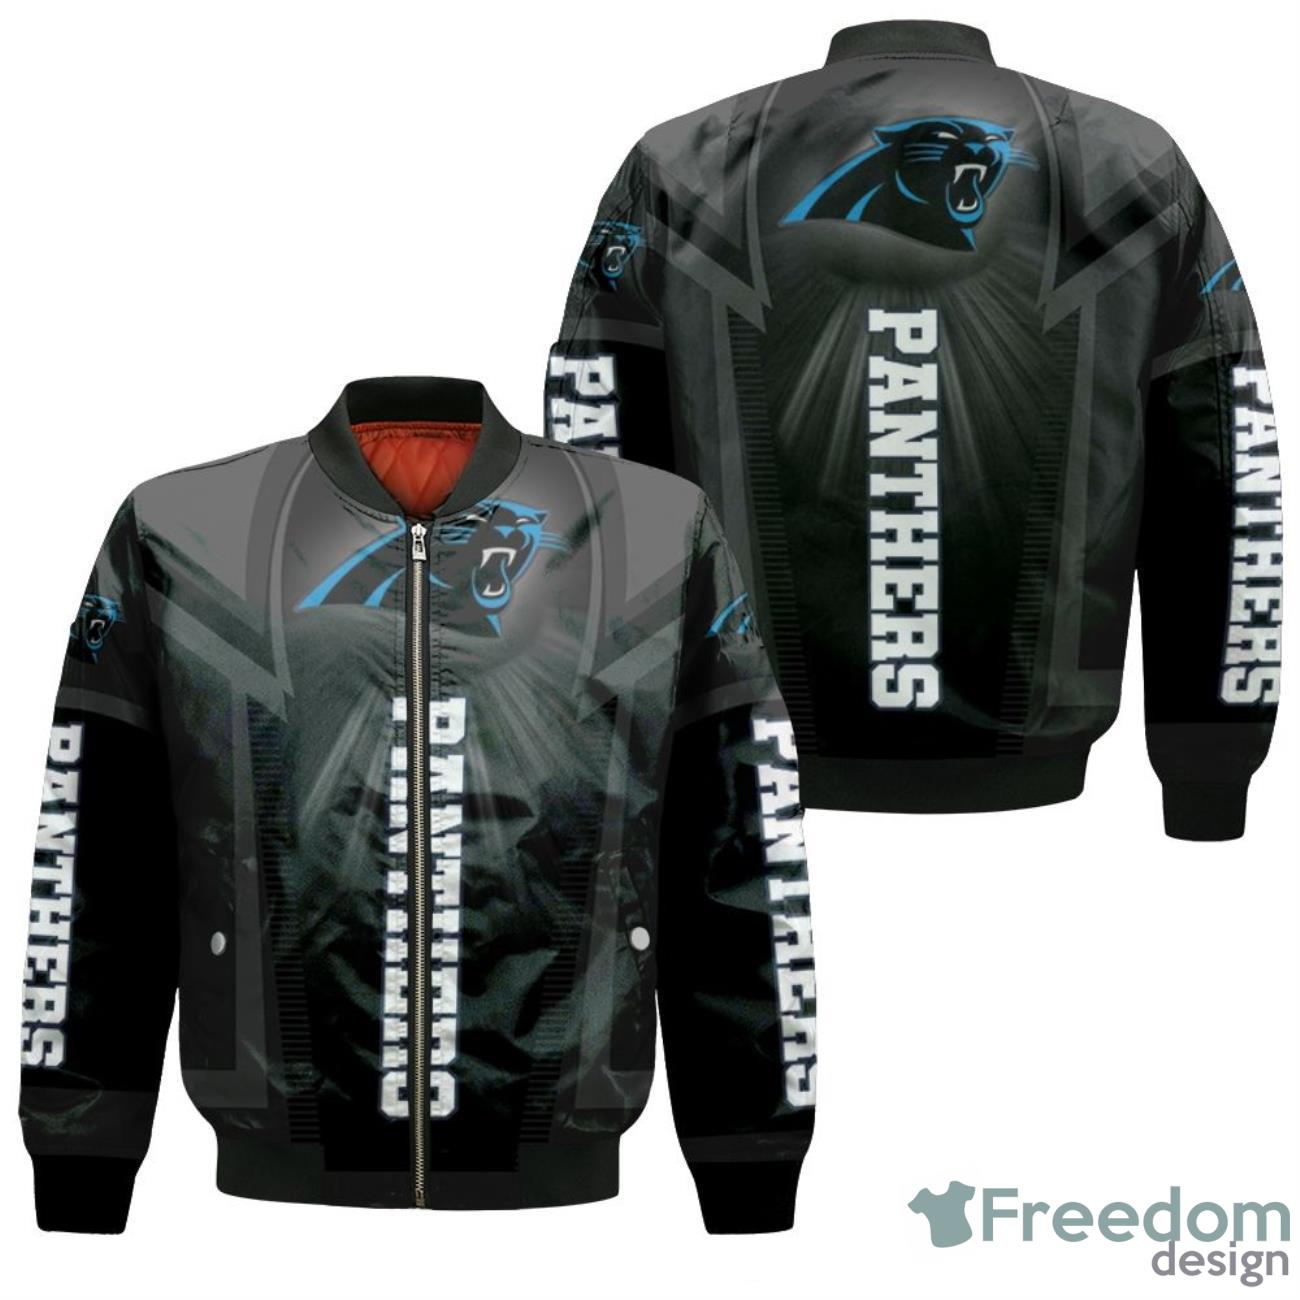 Carolina Panthers For Fans Bomber Jacket Product Photo 1